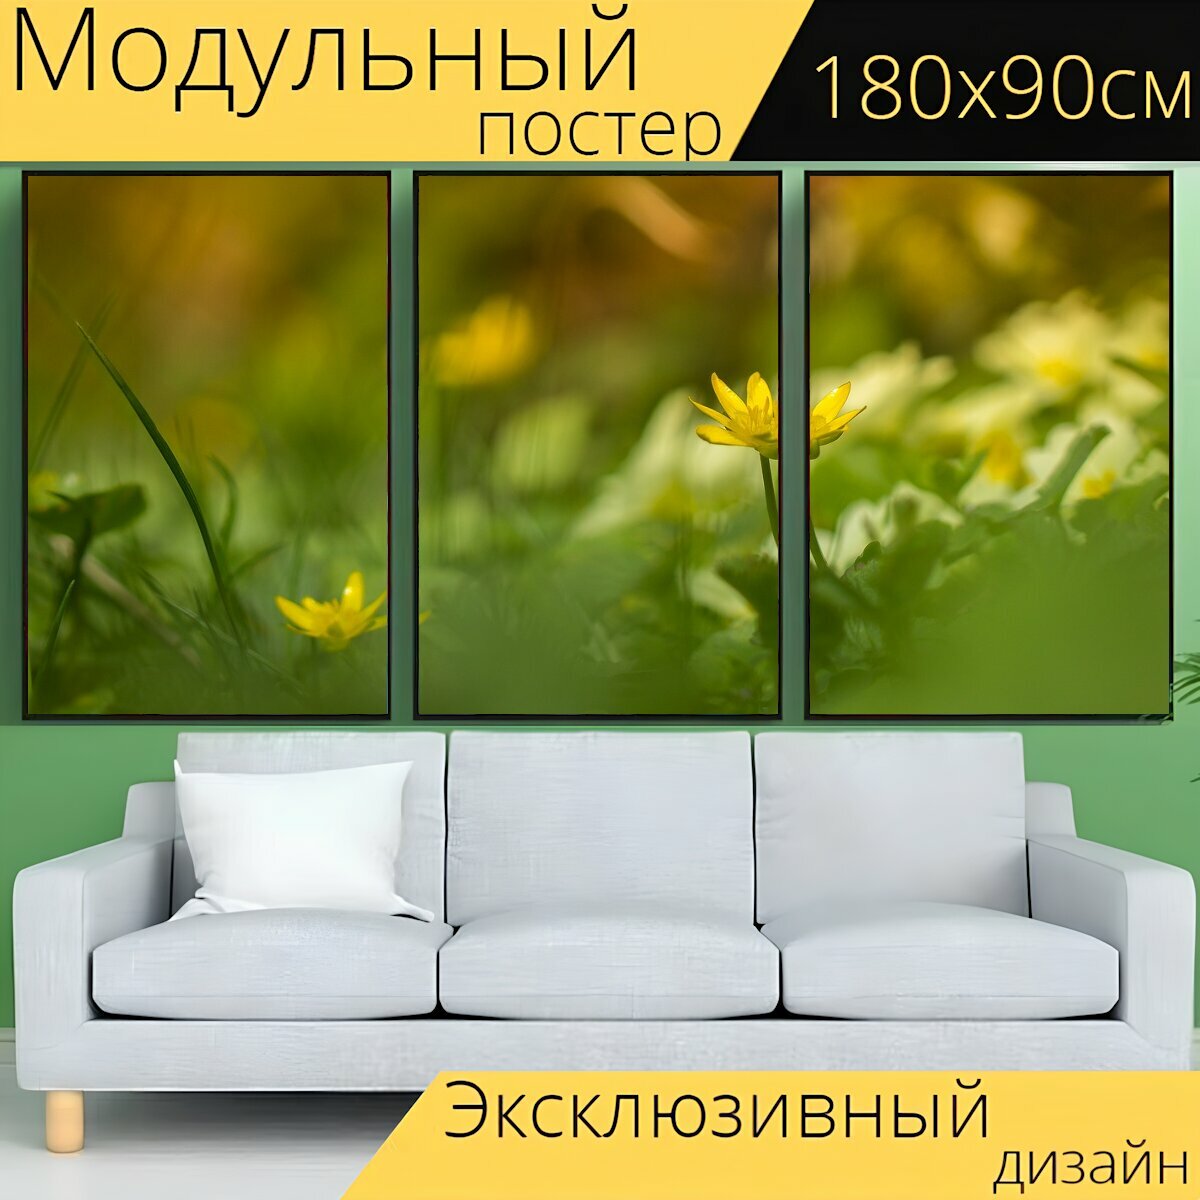 Модульный постер "Цветок, трава, цветочный луг" 180 x 90 см. для интерьера